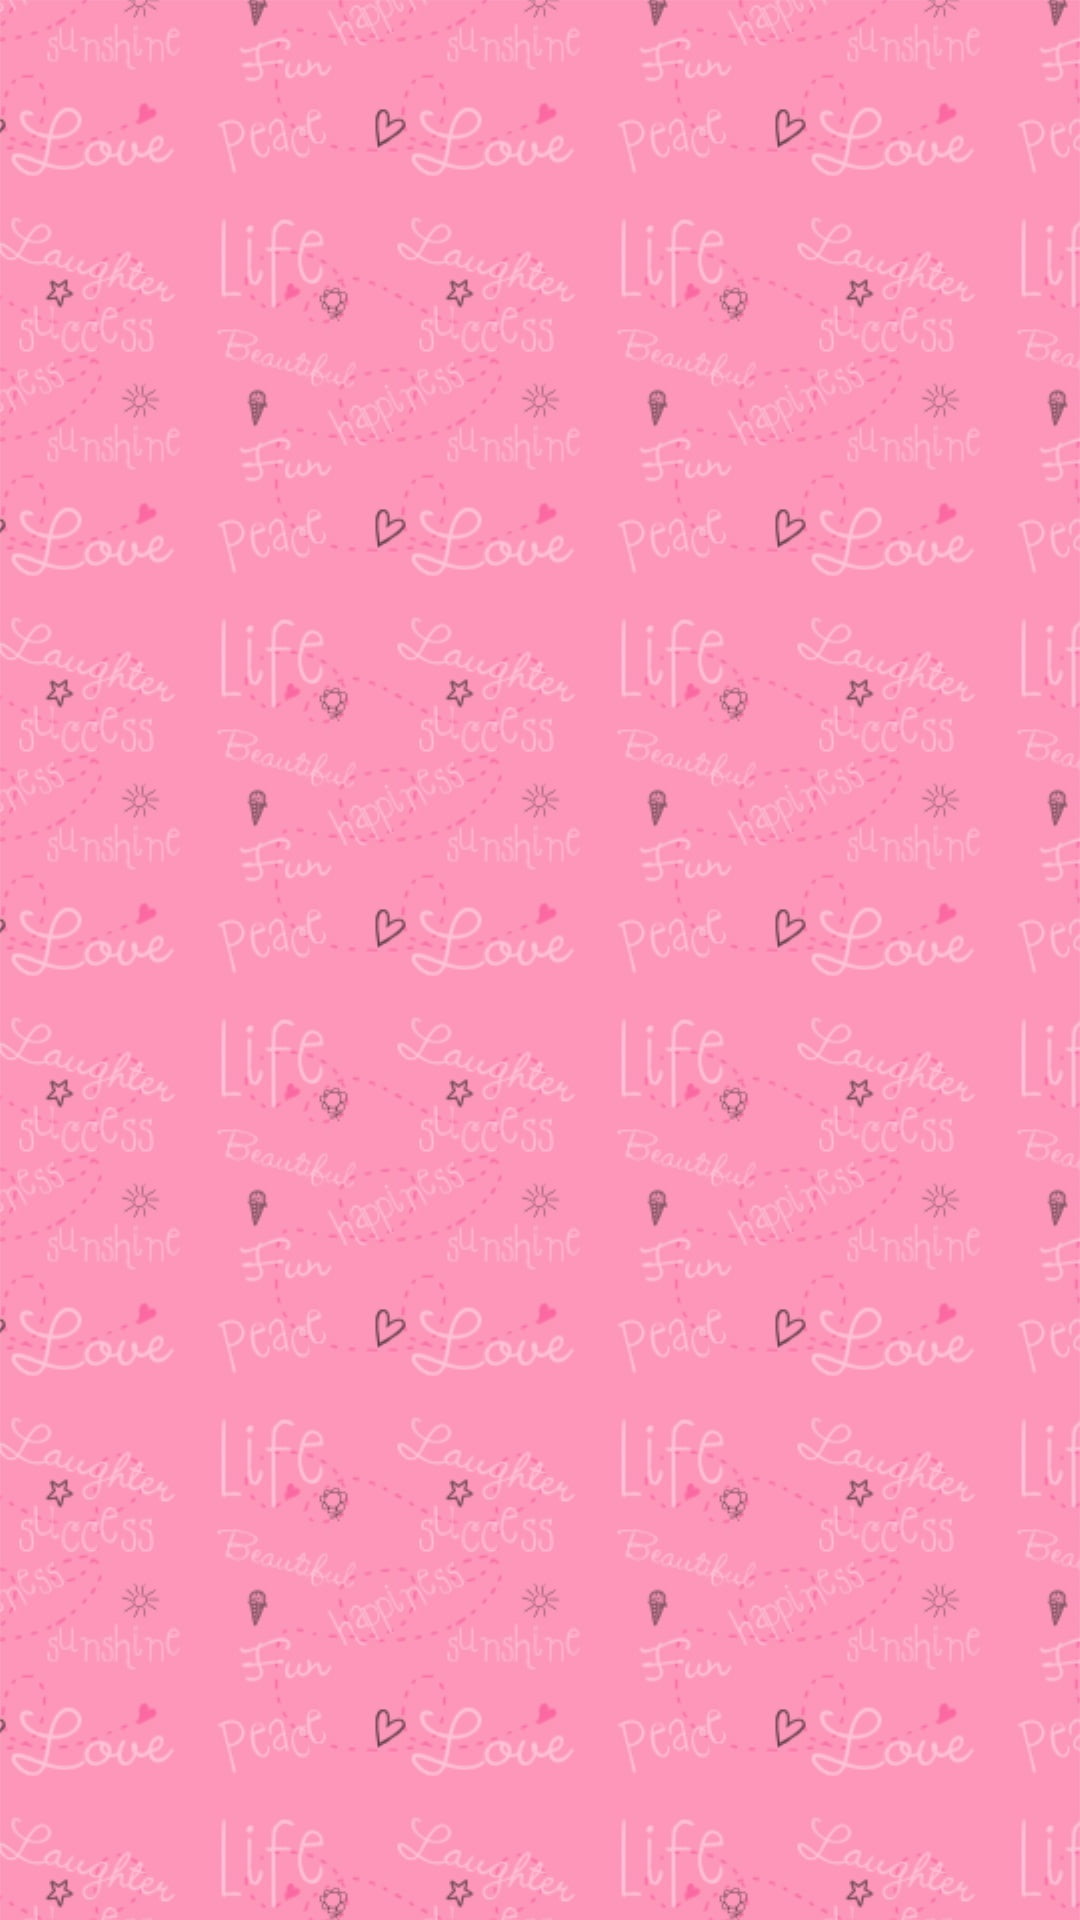 Success Blog Zlclo 可愛い ピンク 壁紙 6297 ピンク 可愛い 壁紙 韓国